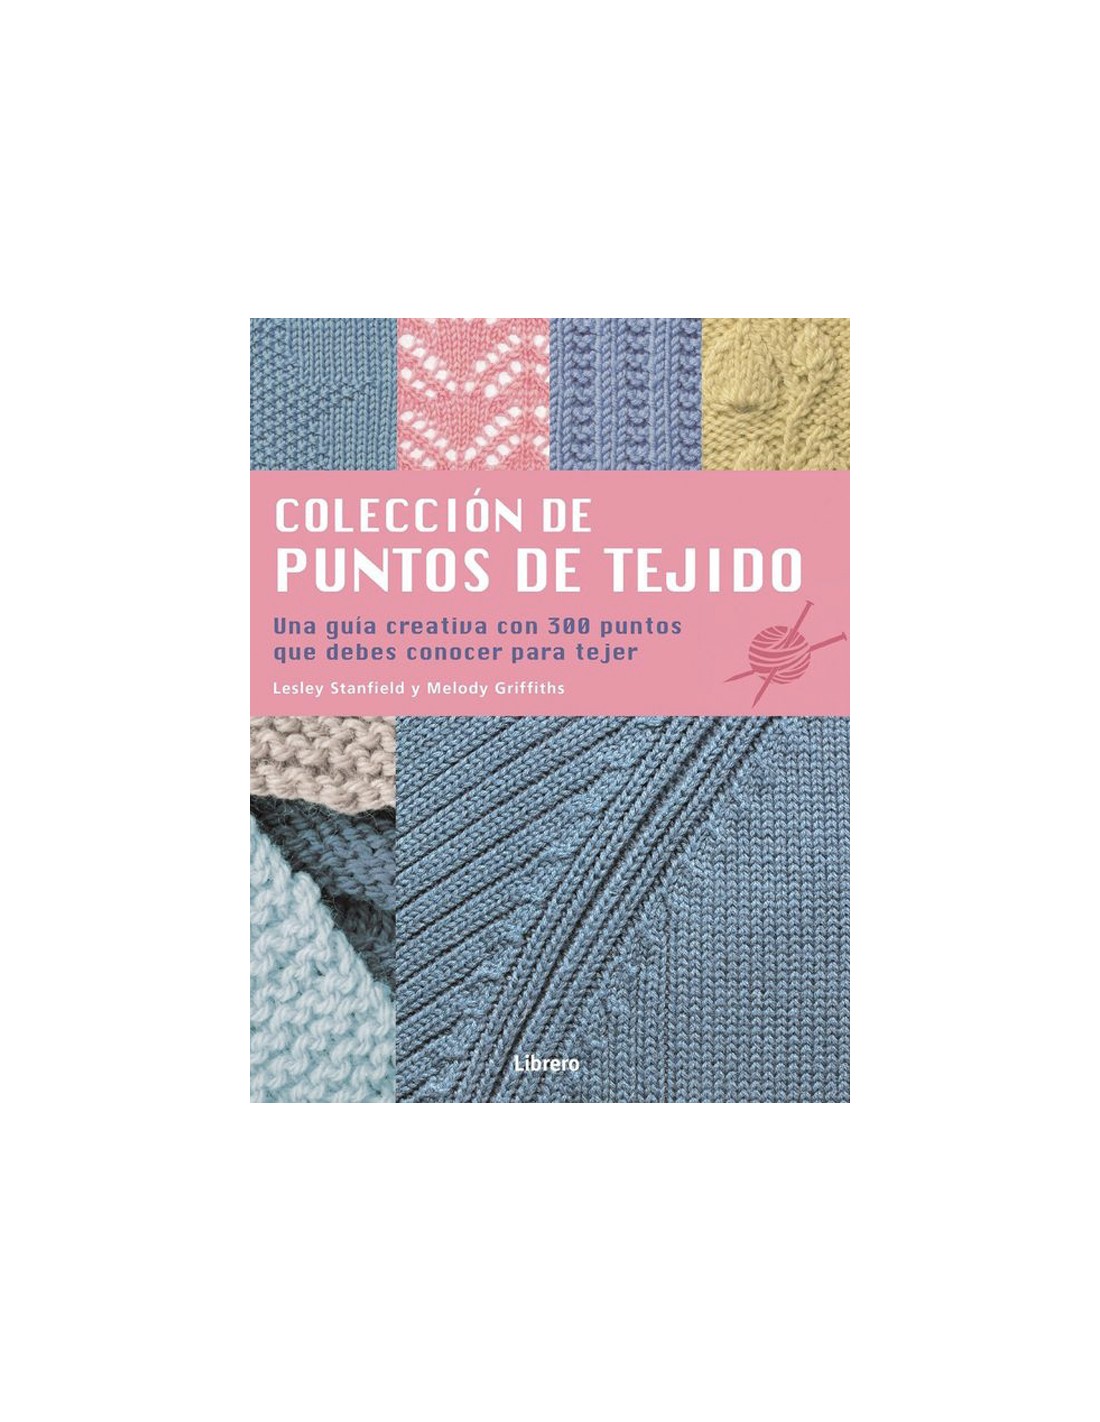 30 Patrones de Bolsos y Estuches Tejidos a Crochet / Revista para descargar